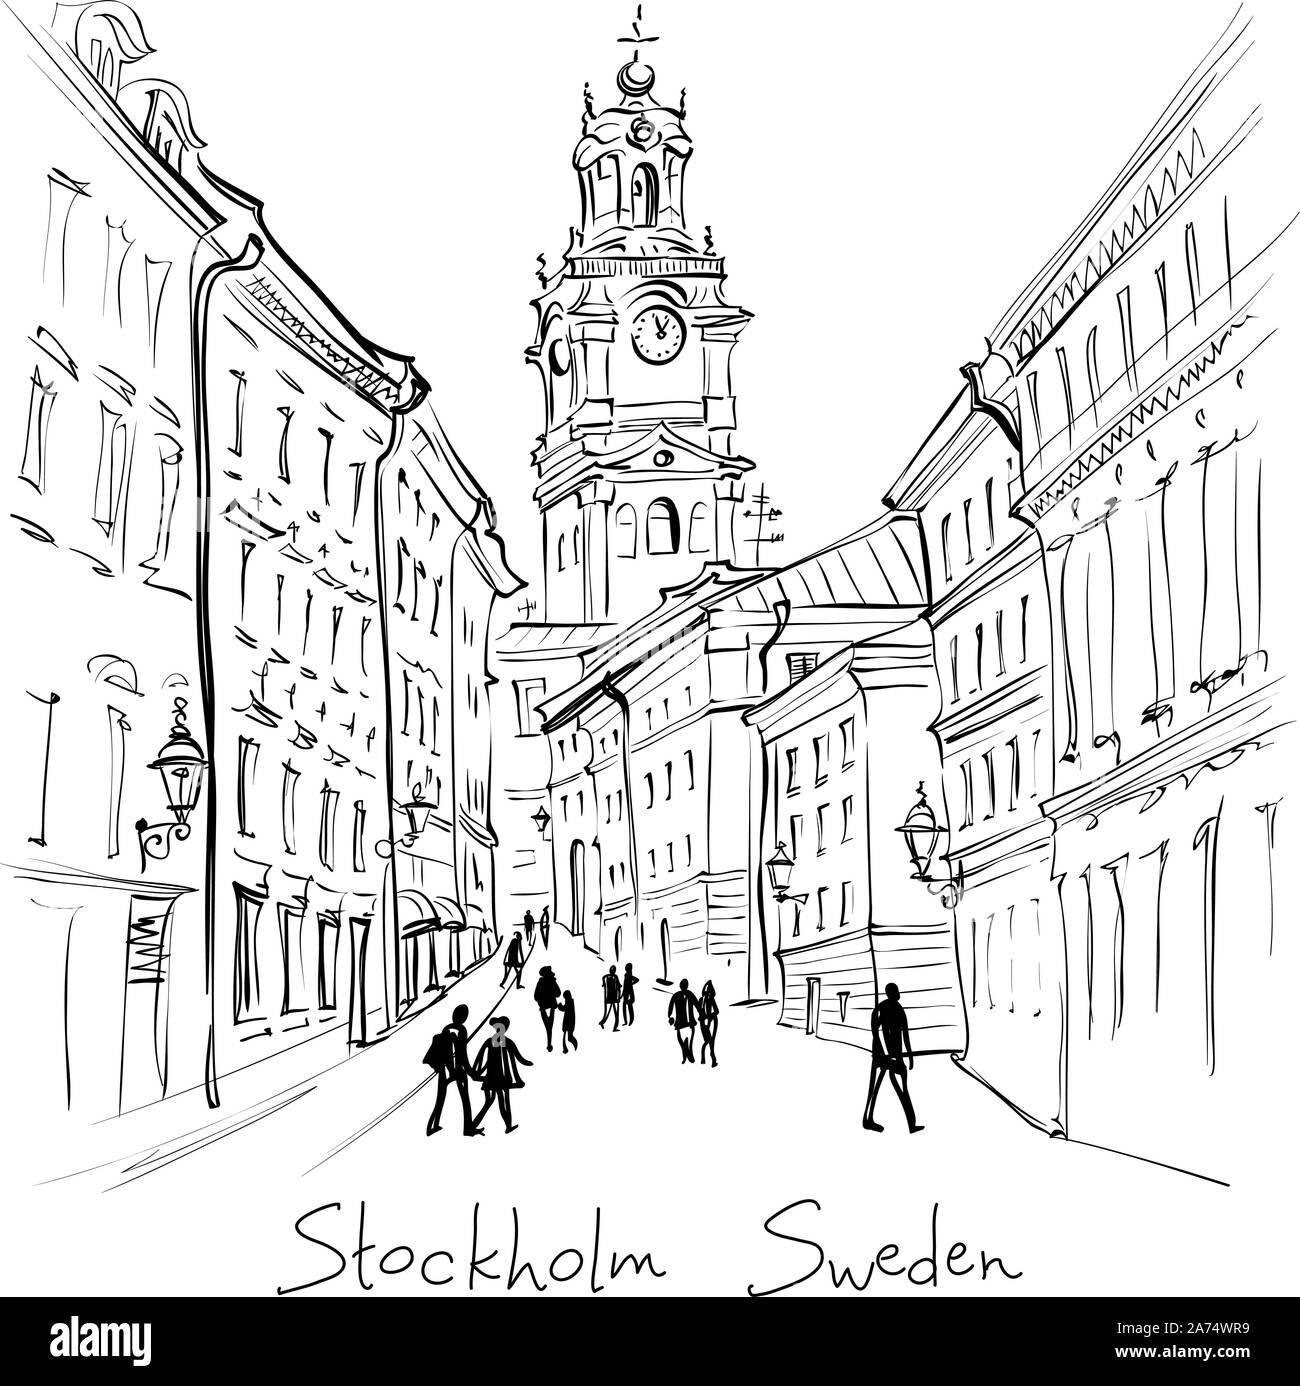 Blanco y negro vectorial boceto de la Iglesia de San Nicolás, o la Catedral de Estocolmo Storkyrkan, Gamla Stan, en el casco antiguo de Estocolmo, capital de Suecia Ilustración del Vector